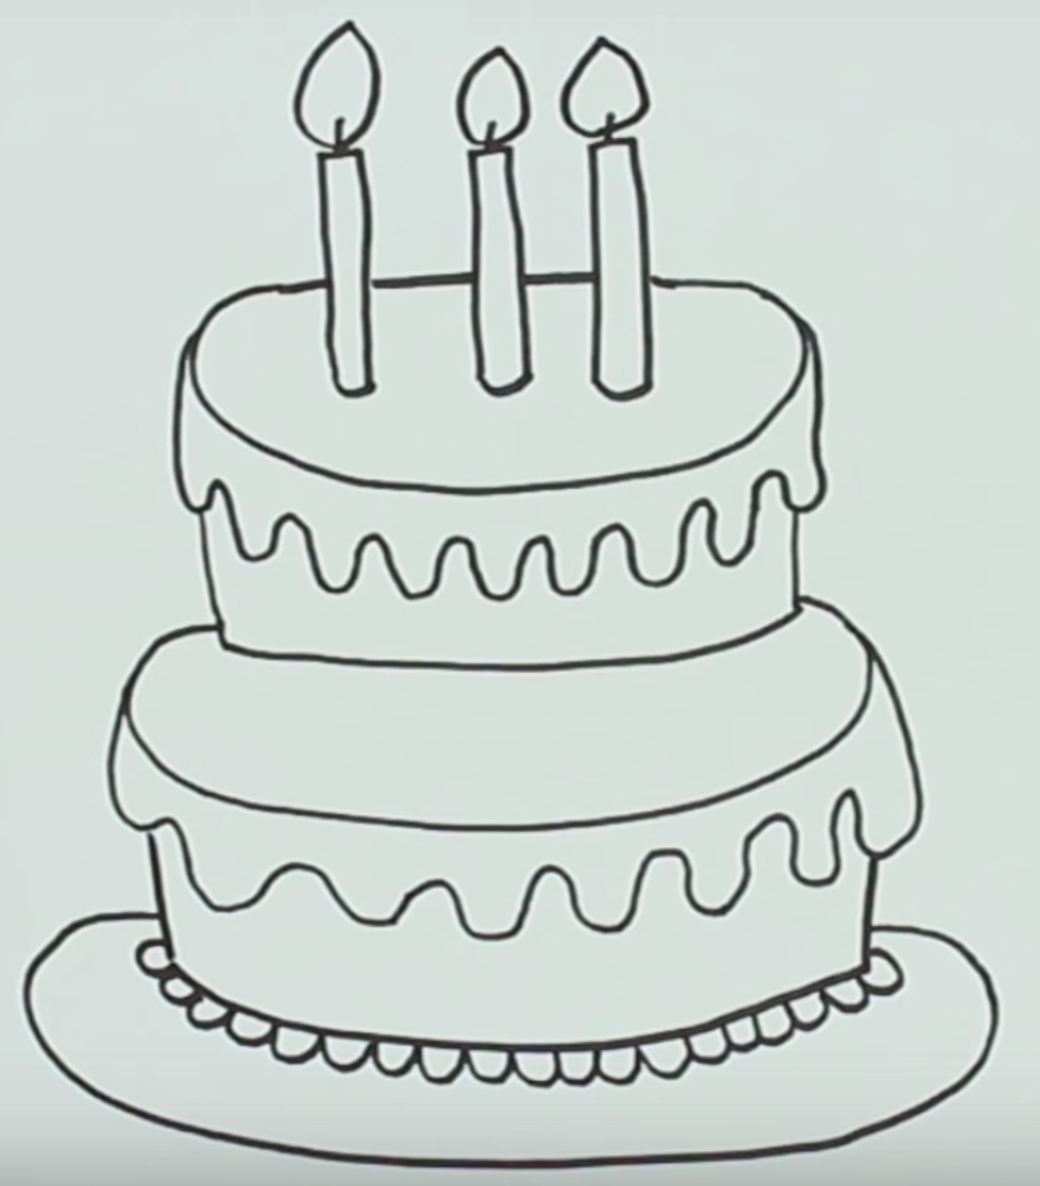 Красивые легкие рисунки на день рождения. Рисунок торта для срисовки. Торт рисунок для детей карандашом. Рисунок торта на день рождения карандашом. Рисунки тортиков для срисовки.